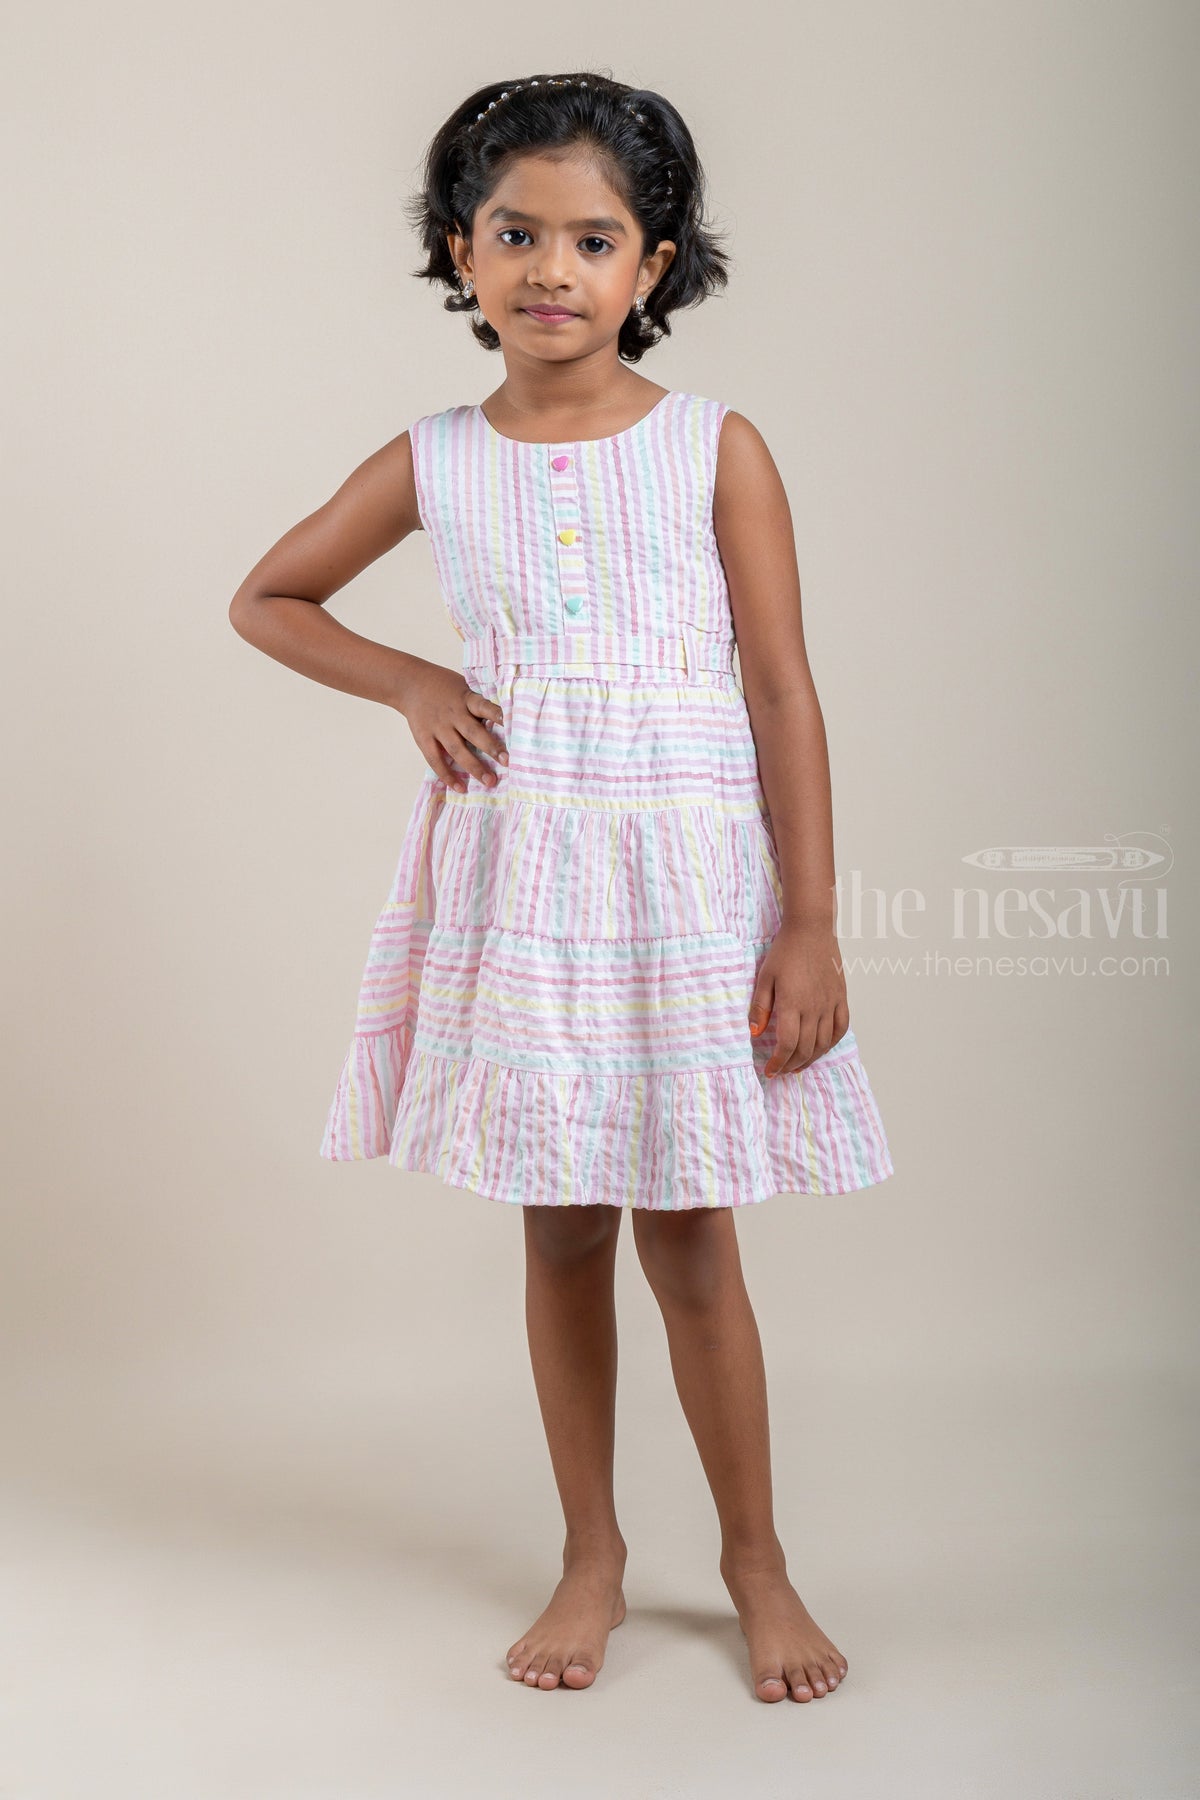 Cute Cotton Frock - Striped Pink Baby Casual Dress | Layered Pattern | The  Nesavu – The Nesavu